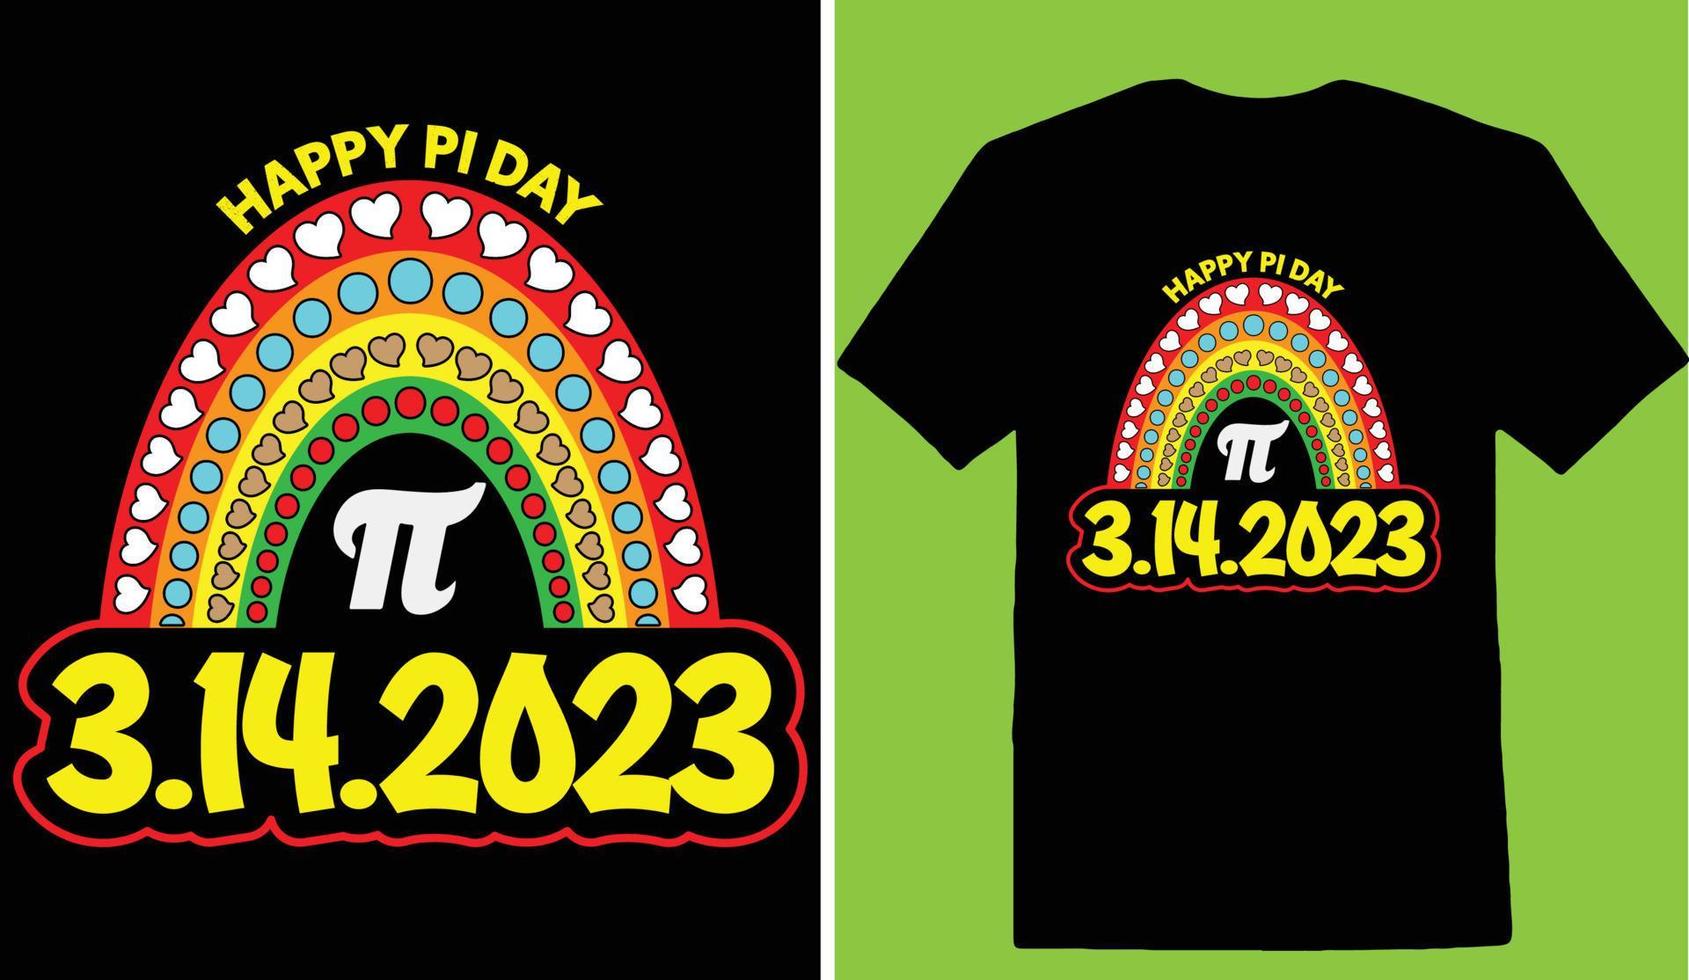 contento Pi día 3.14.2023 03 camiseta vector